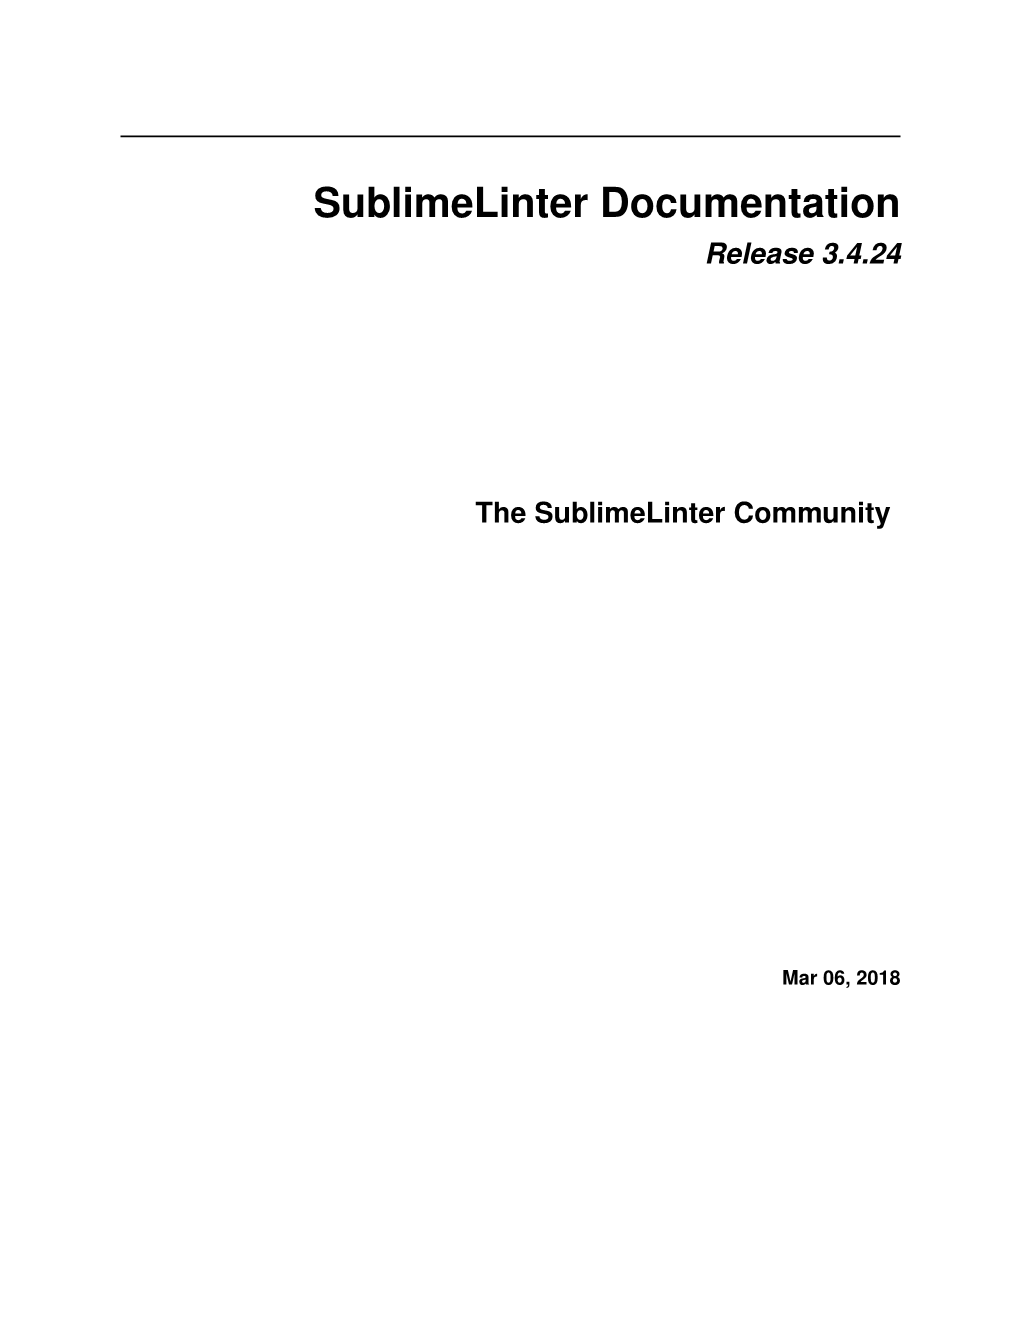 Sublimelinter Documentation Release 3.4.24